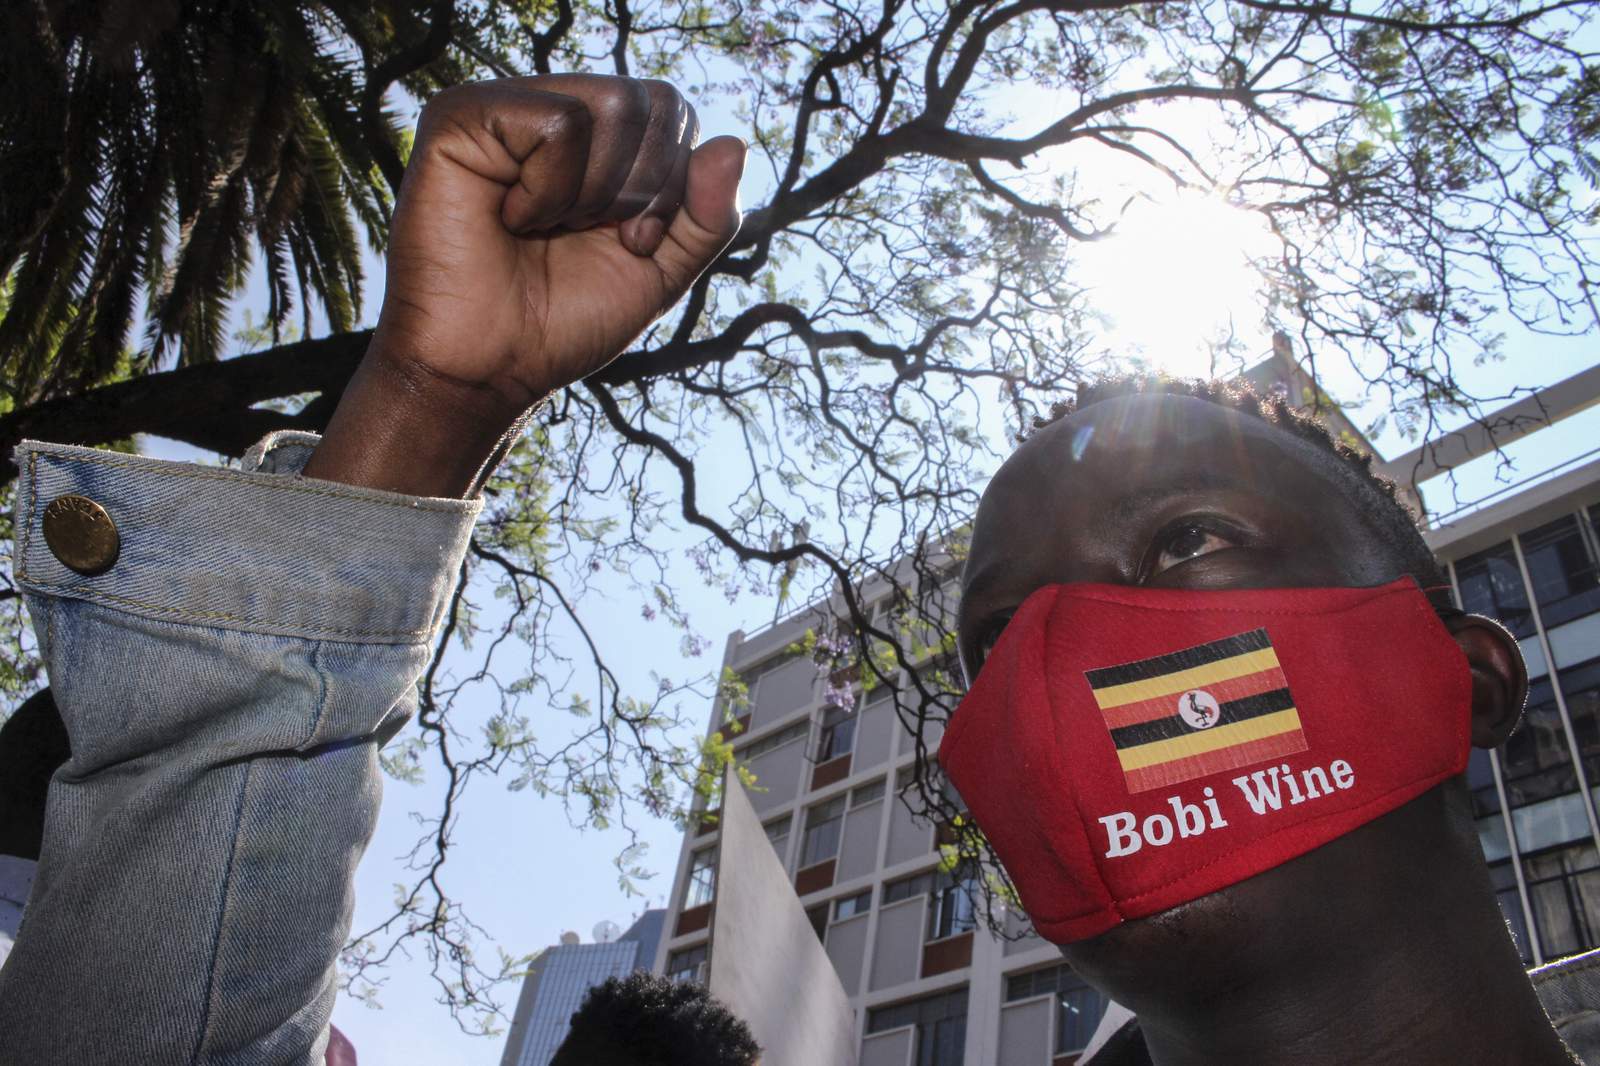 Death toll up to 7 in Uganda's unrest after Bobi Wine arrest